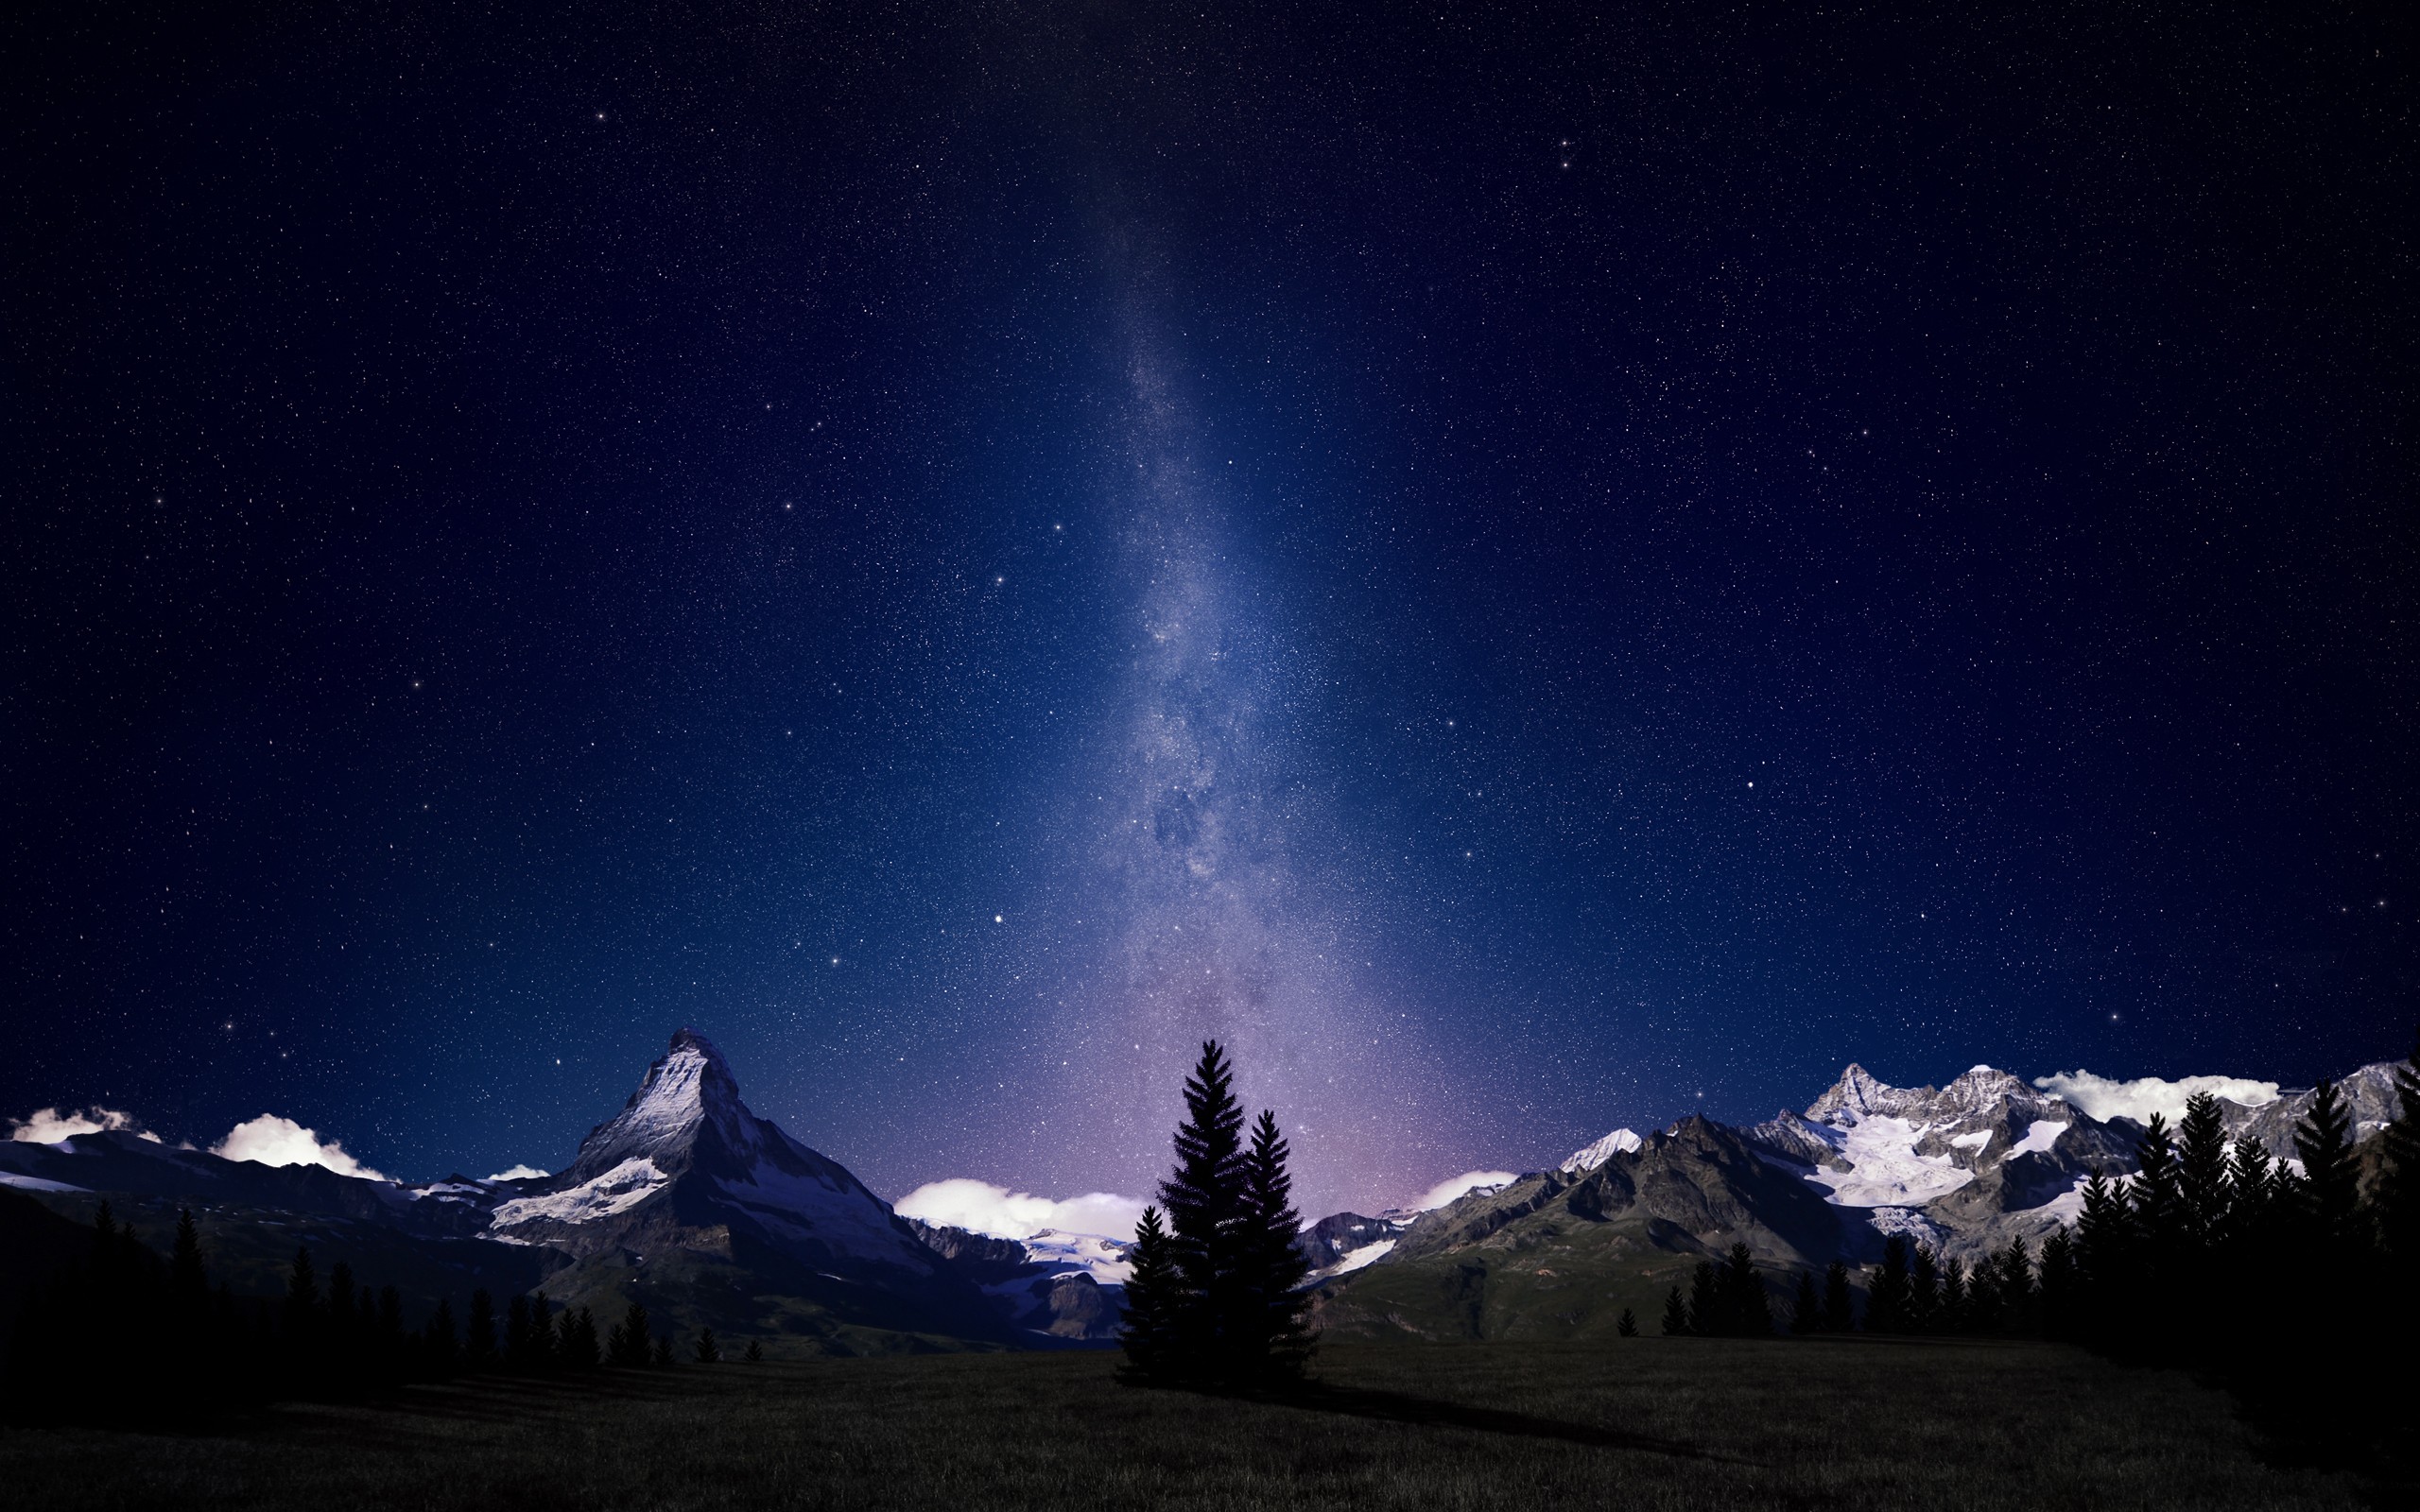 General 2560x1600 space landscape digital art space art stars mountains night starry night sky outdoors Swiss Alps Matterhorn